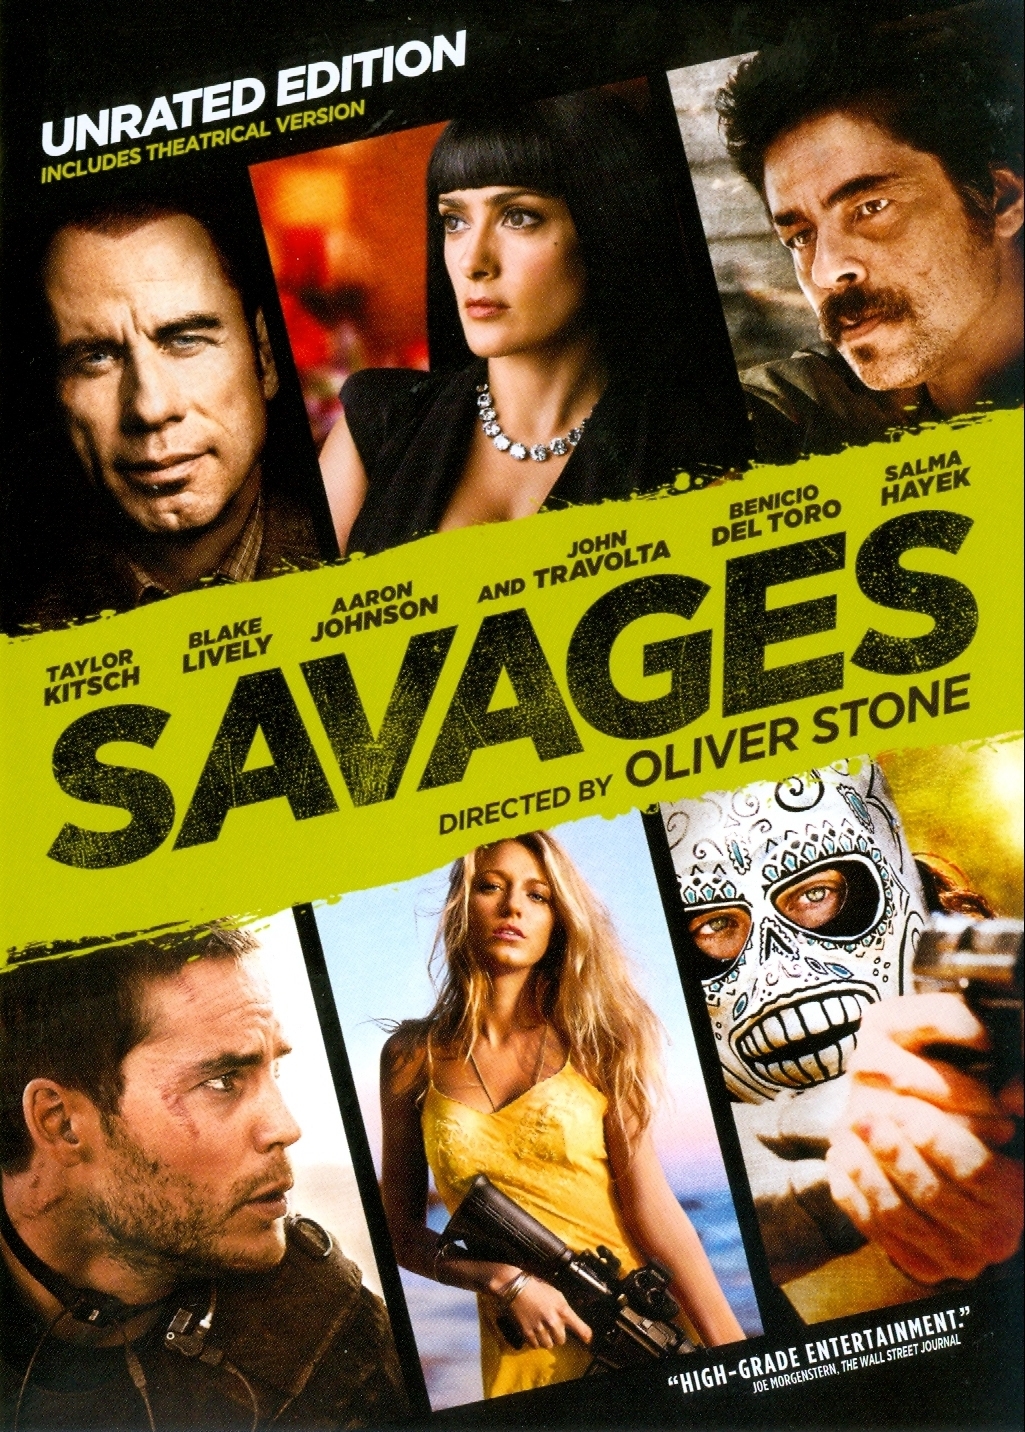 بلیک لیولی در صحنه فیلم سینمایی Savages: The Interrogations به همراه بنیسیو دل تورو، آرون تیلور جانسون، Taylor Kitsch، جان تراولتا و Salma Hayek